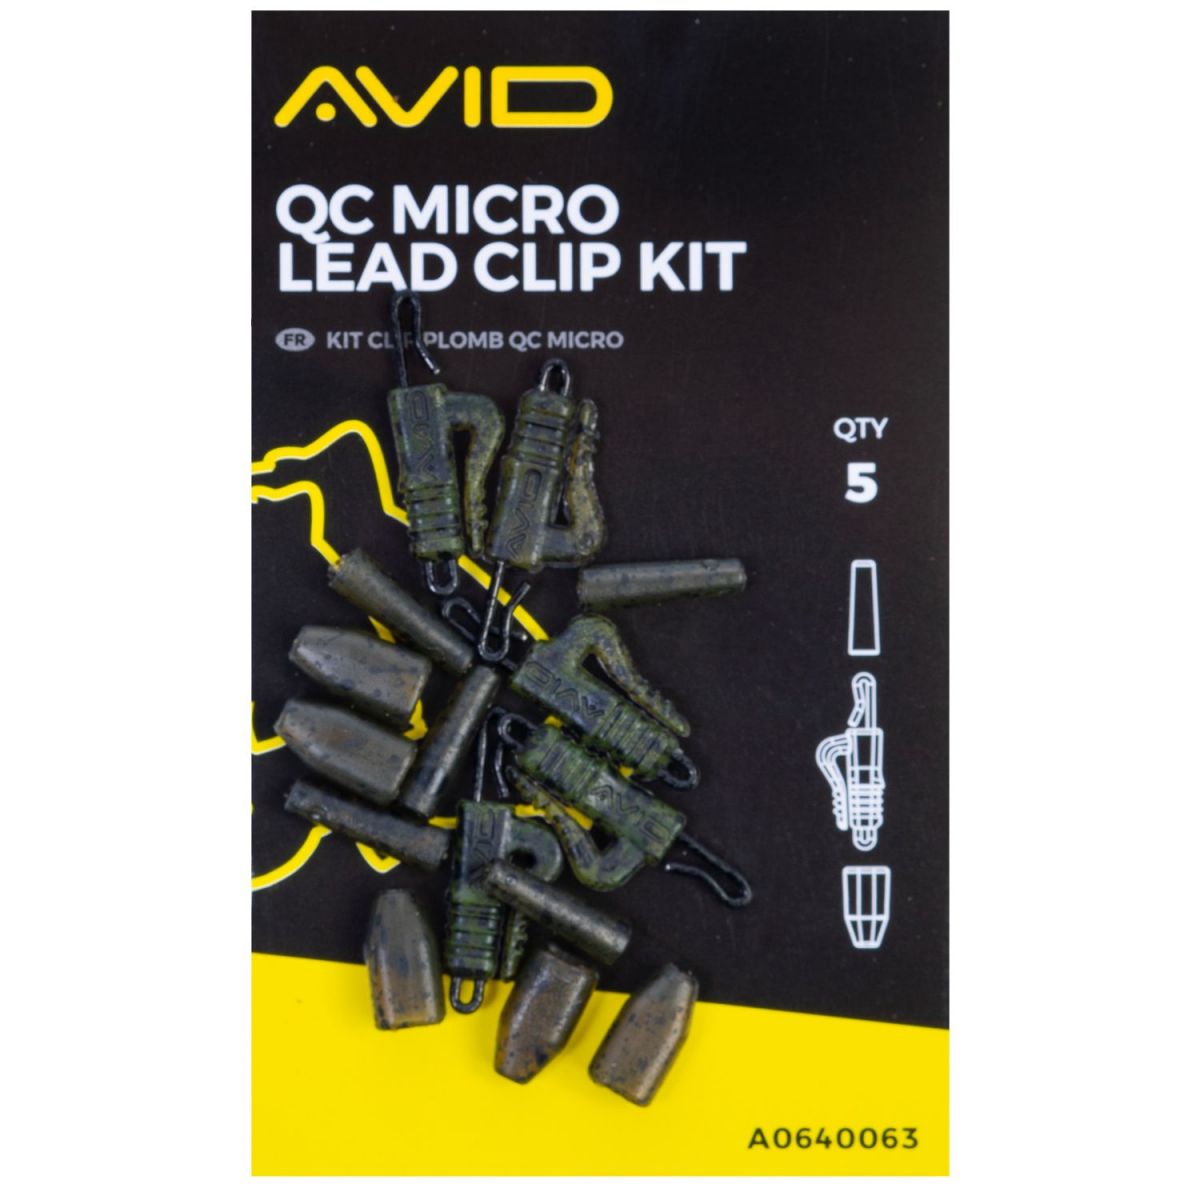 Klip na olovo Outline Micro Lead Clip Kit / Bižutéria / obratlíky, klipy, prevleky